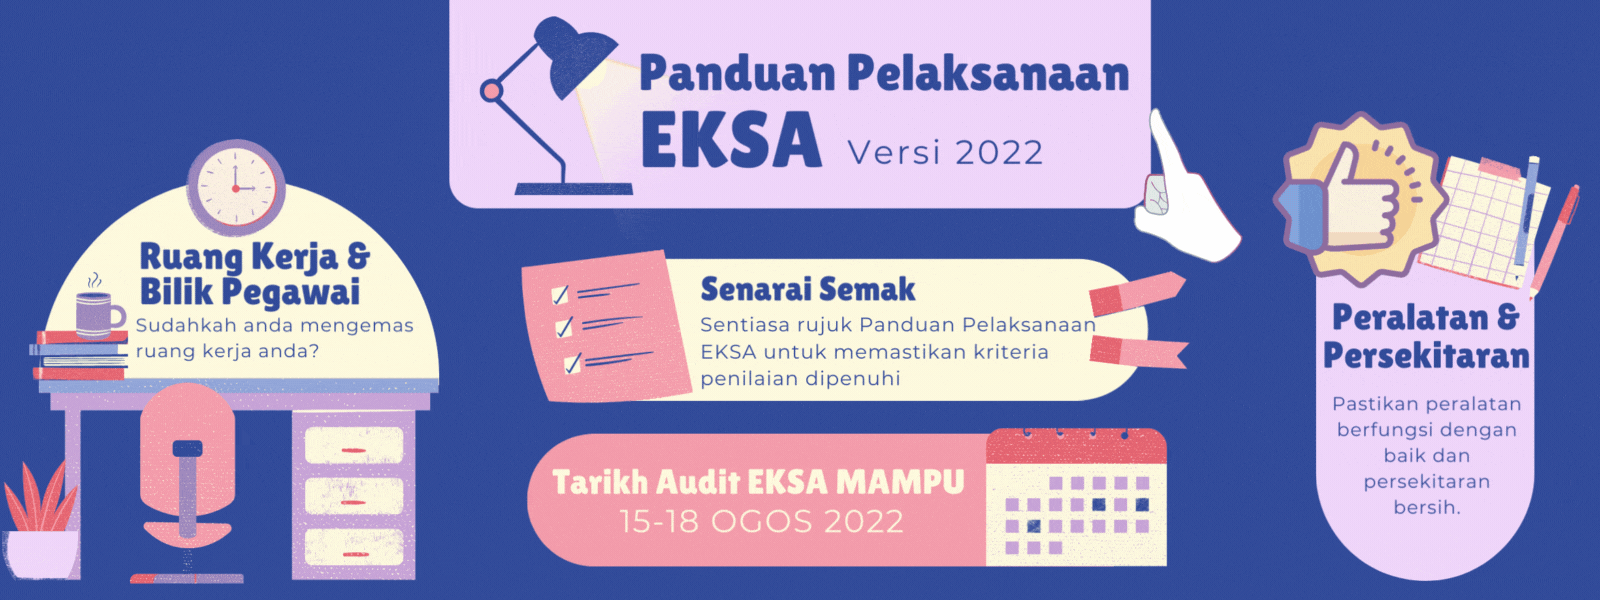 Panduan Pelaksanaan EKSA Versi 2022